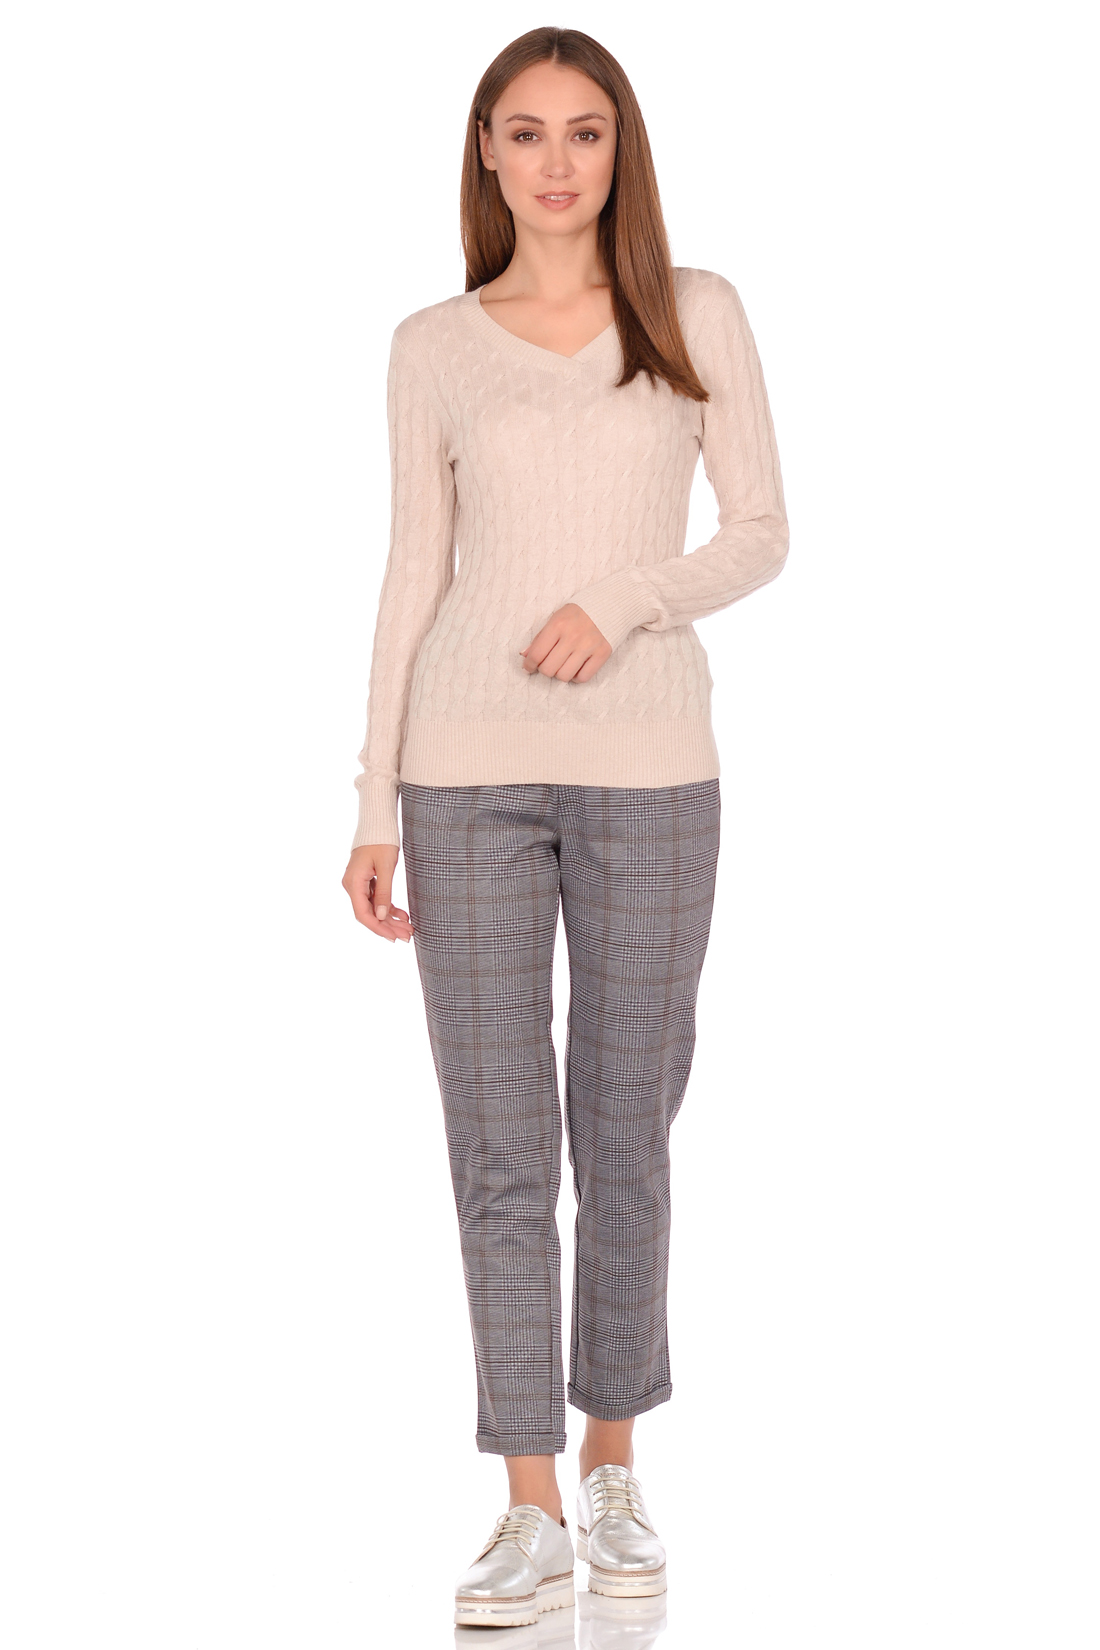 Базовый пуловер с узором и ангорой (арт. baon B138703), размер XXL, цвет серый Базовый пуловер с узором и ангорой (арт. baon B138703) - фото 3